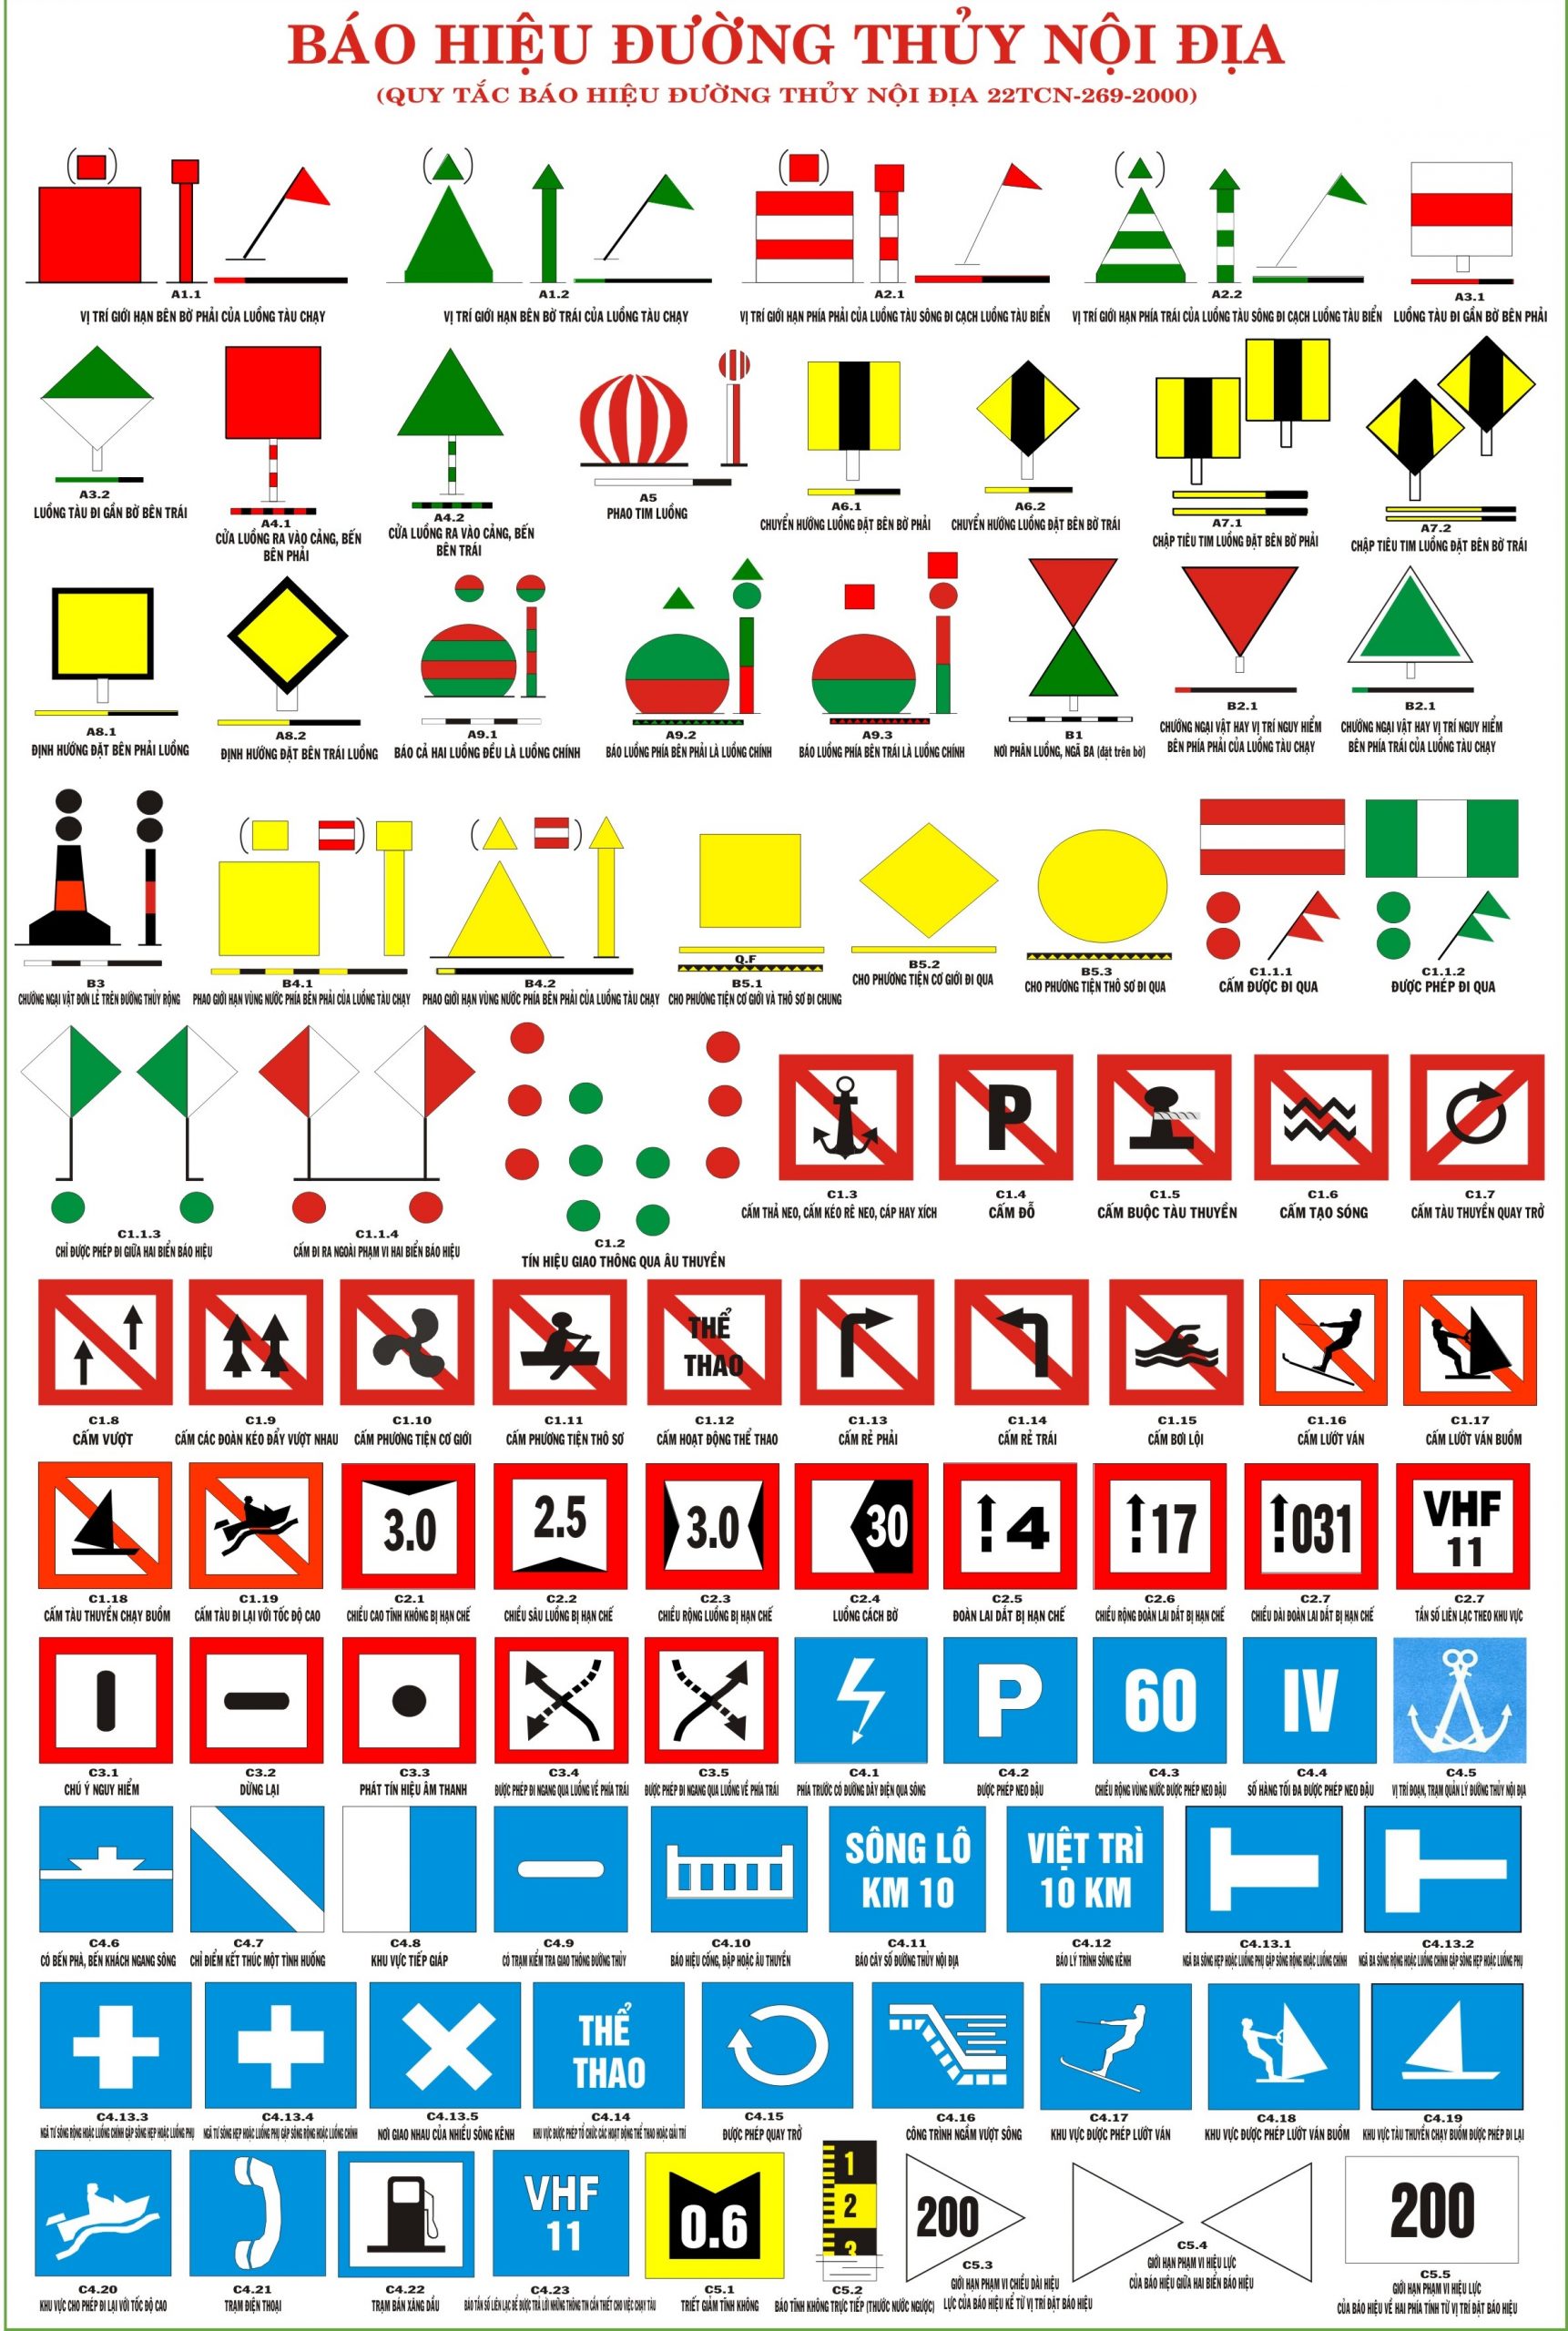 Ý nghĩa và cách nhận biết các biển báo giao thông